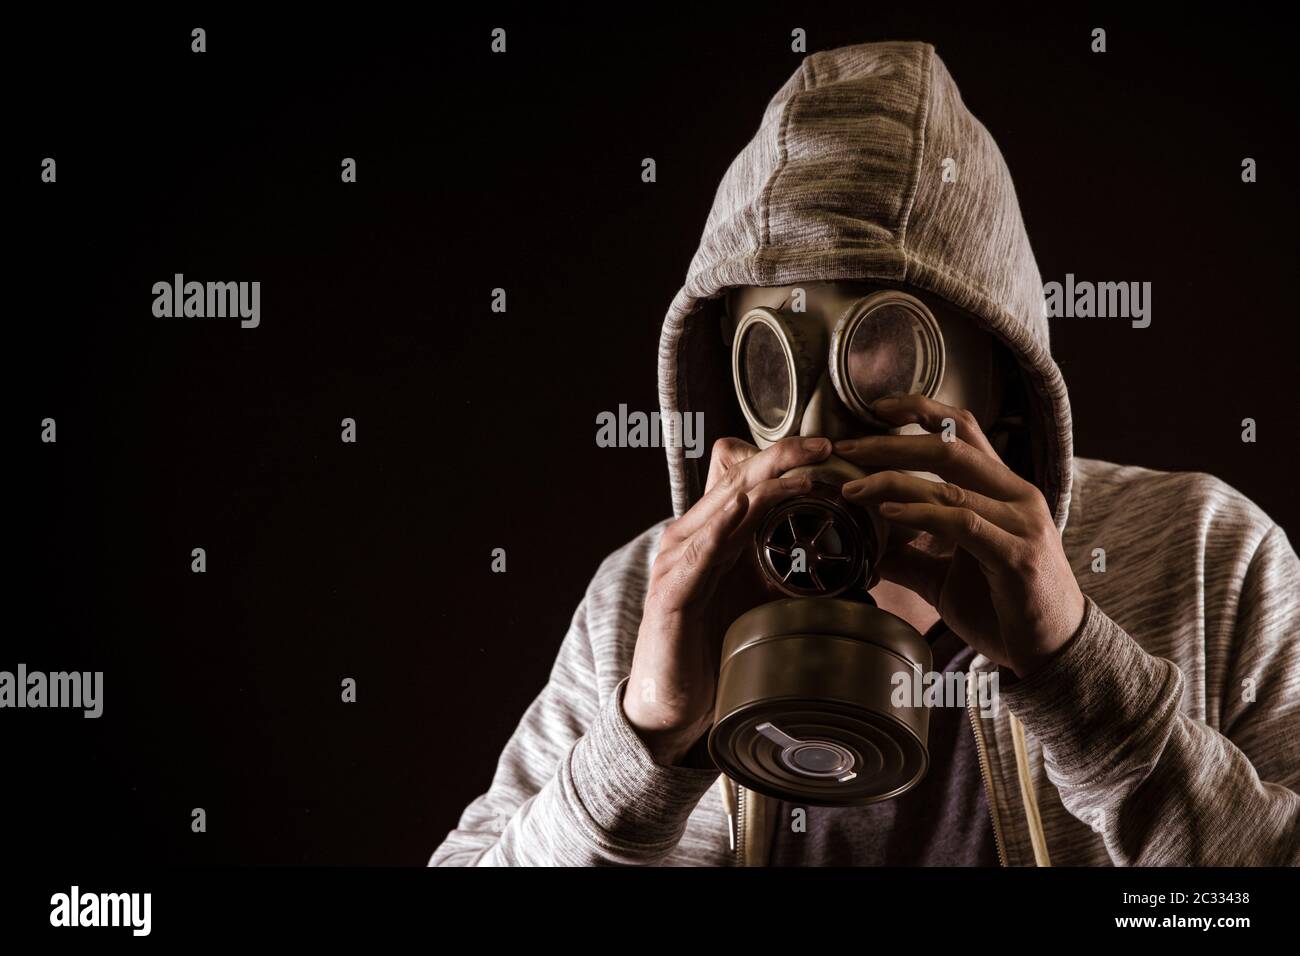 l'uomo mette sulla maschera a gas per proteggere contro il gas. Ritratto su sfondo nero, colorazione drammatica. Foto Stock